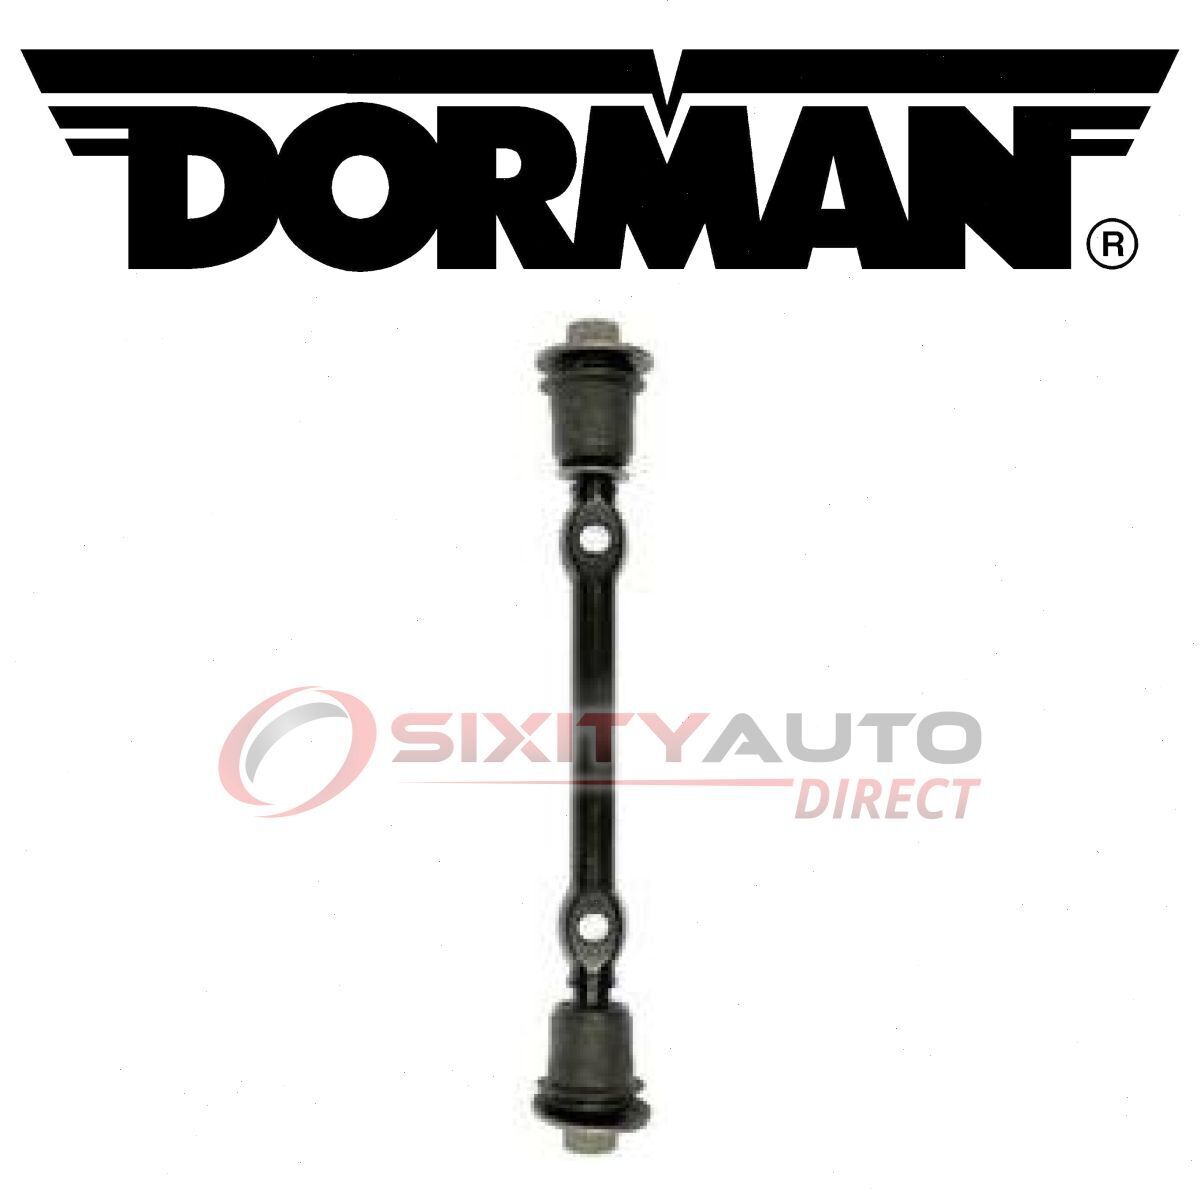 Dorman Front Upper Suspension Control Arm Shaft Kit for 1978-1988 Oldsmobile hr